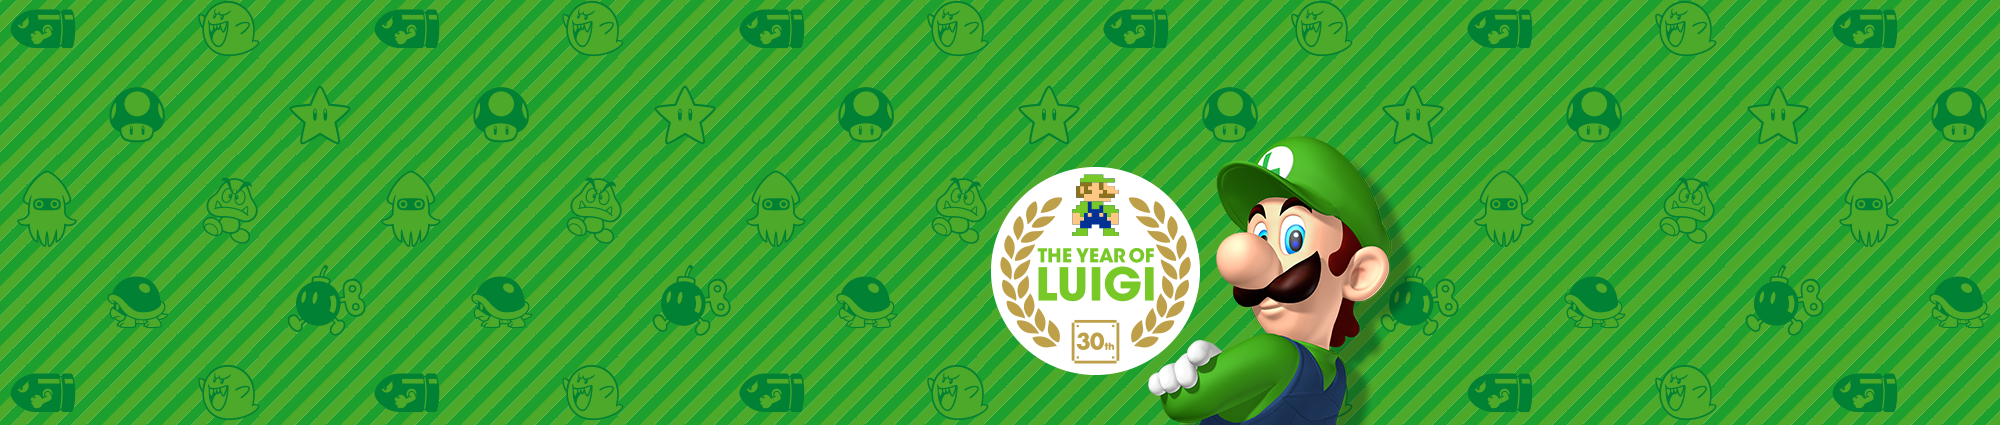 El Año de Luigi 